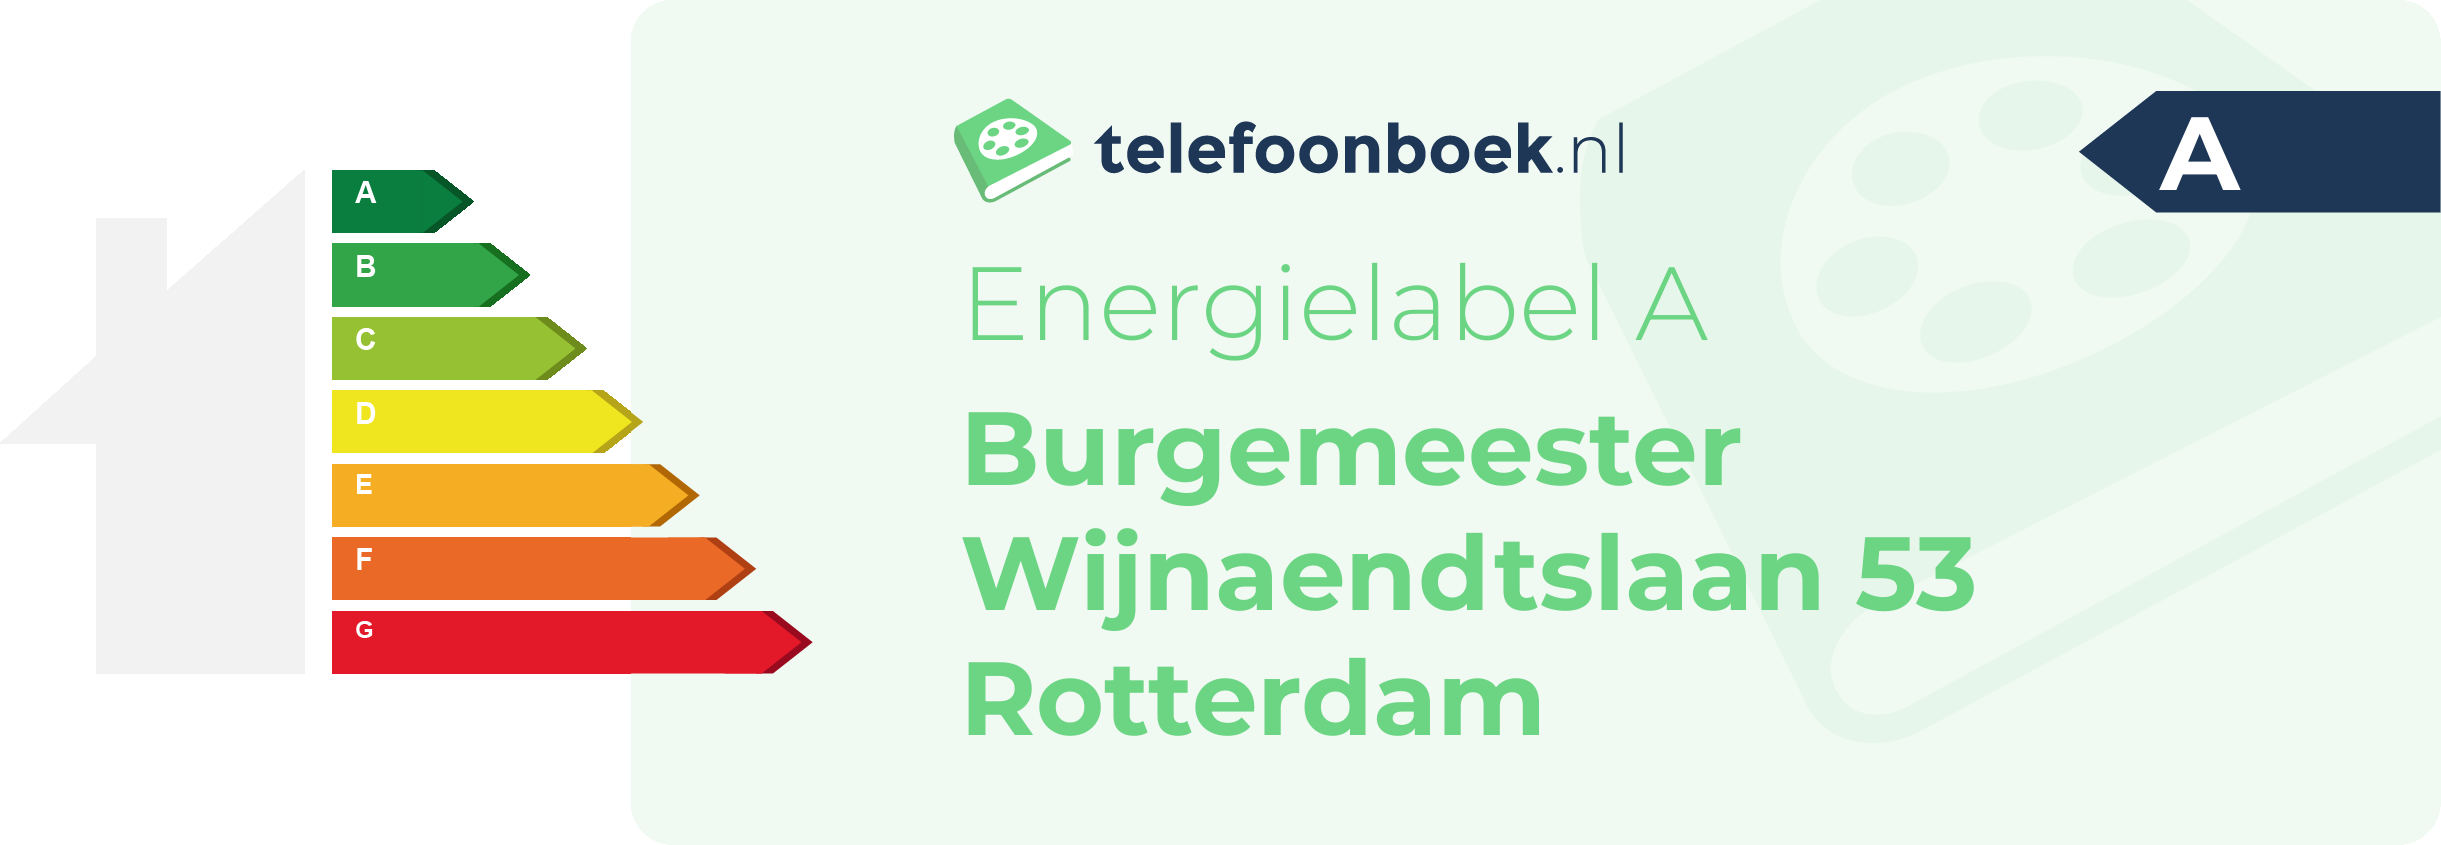 Energielabel Burgemeester Wijnaendtslaan 53 Rotterdam